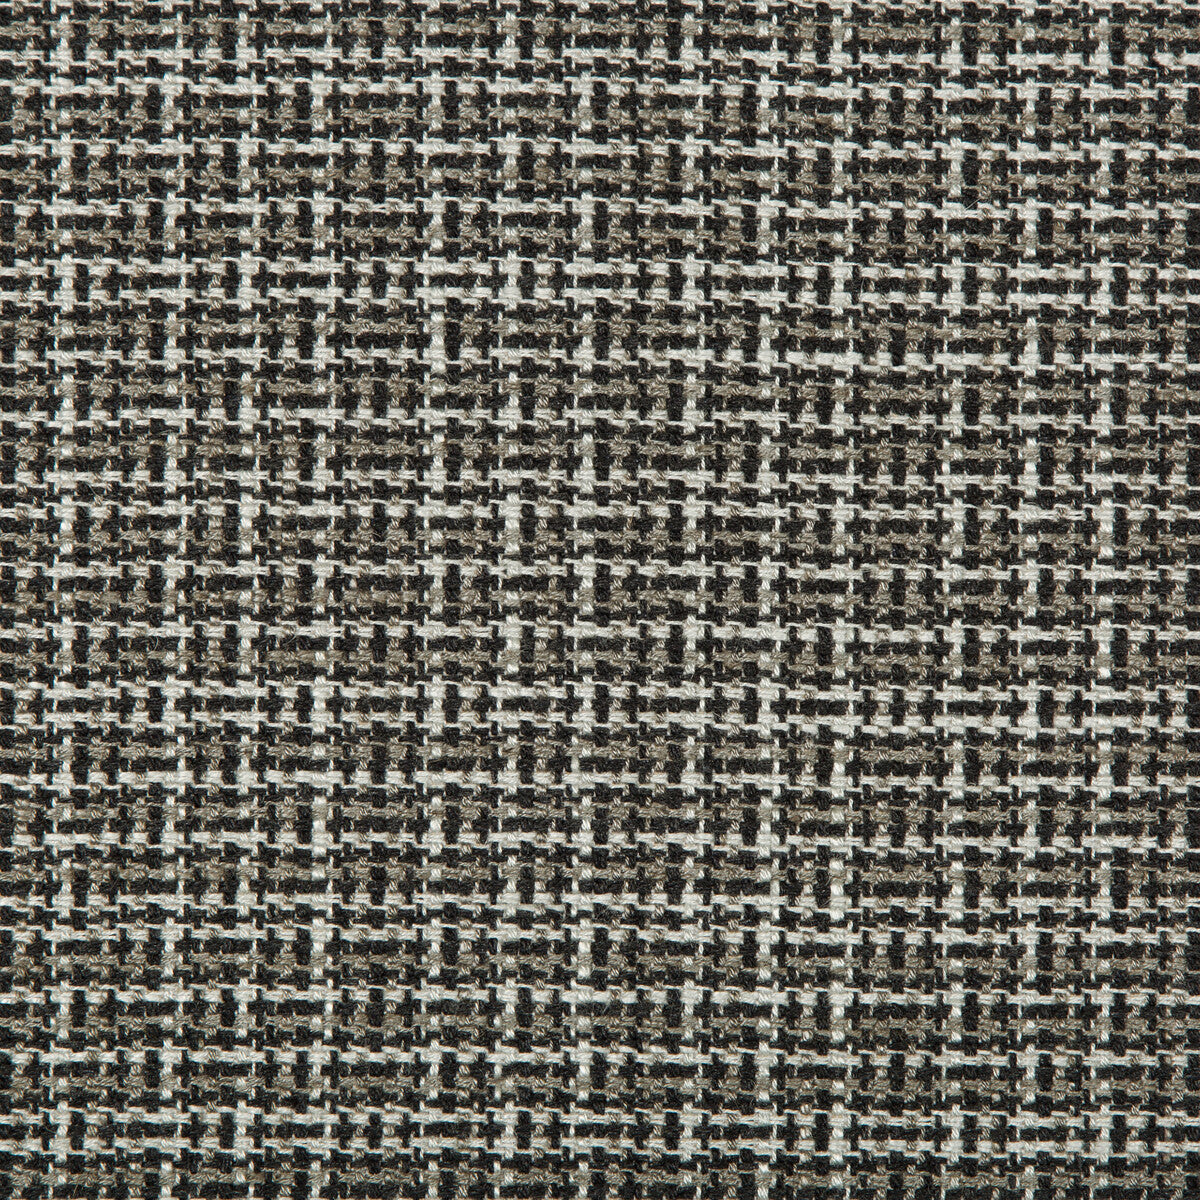 Kravet Design fabric in 35655-218 color - pattern 35655.218.0 - by Kravet Design